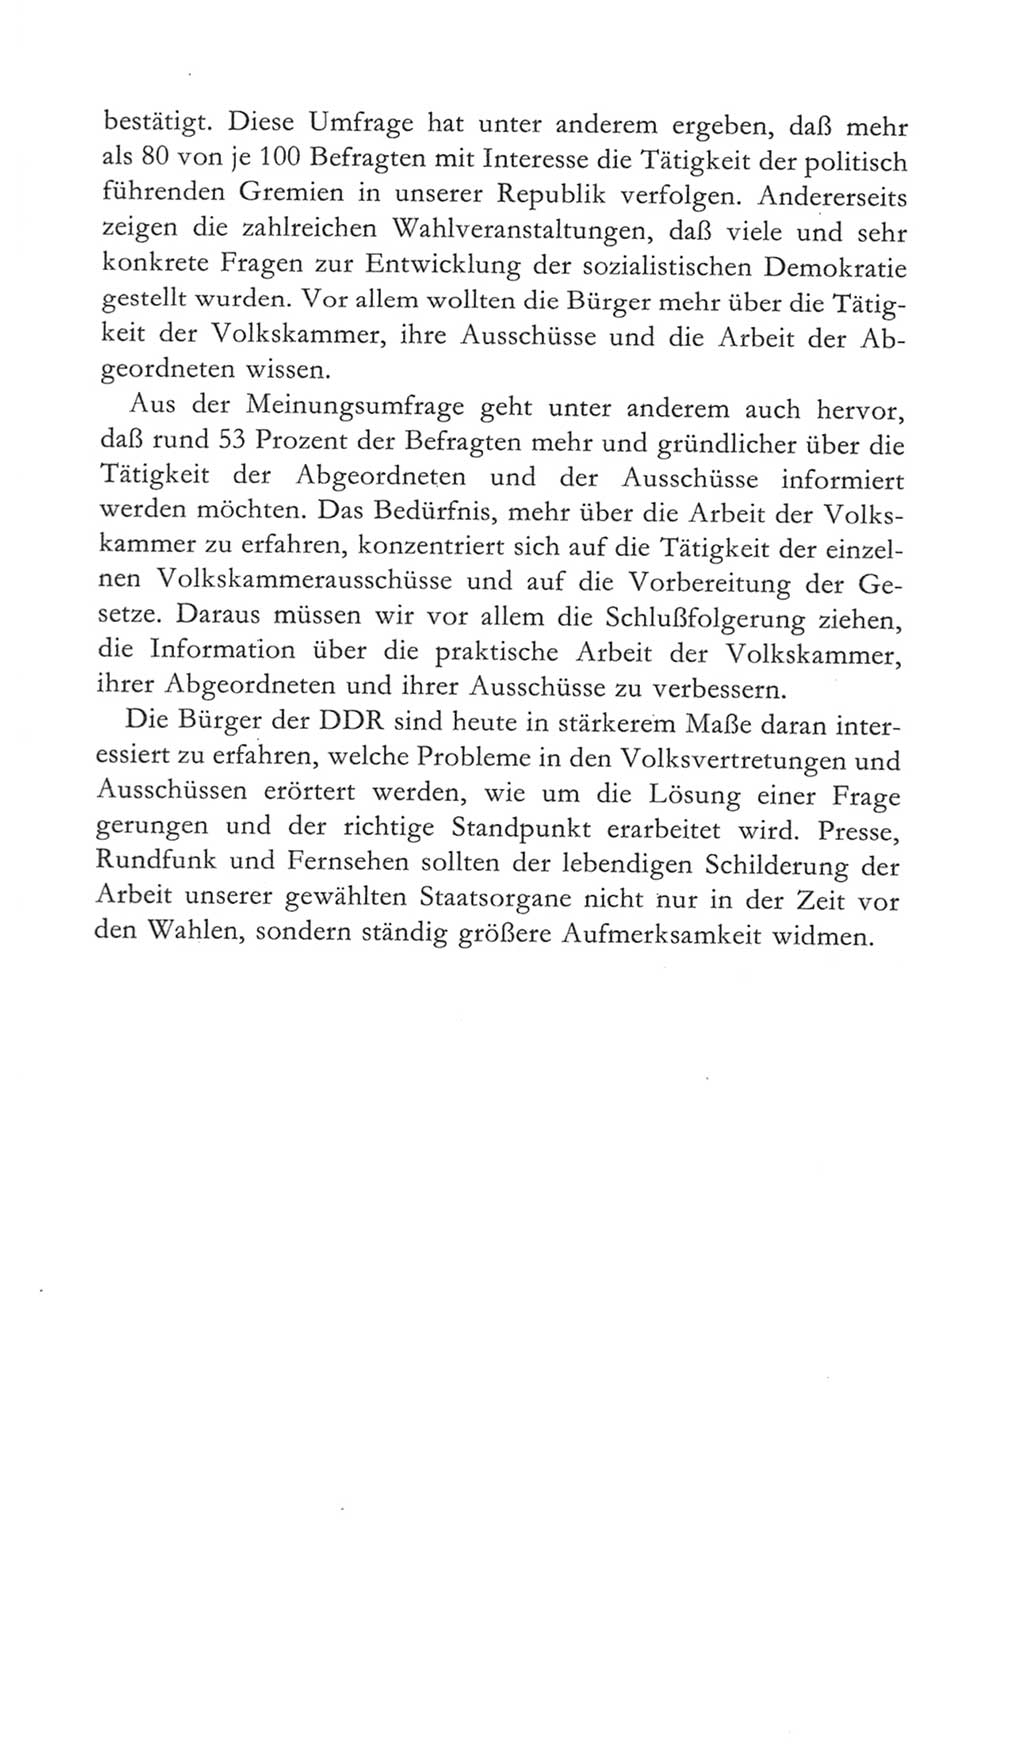 Volkskammer (VK) der Deutschen Demokratischen Republik (DDR) 5. Wahlperiode 1967-1971, Seite 13 (VK. DDR 5. WP. 1967-1971, S. 13)